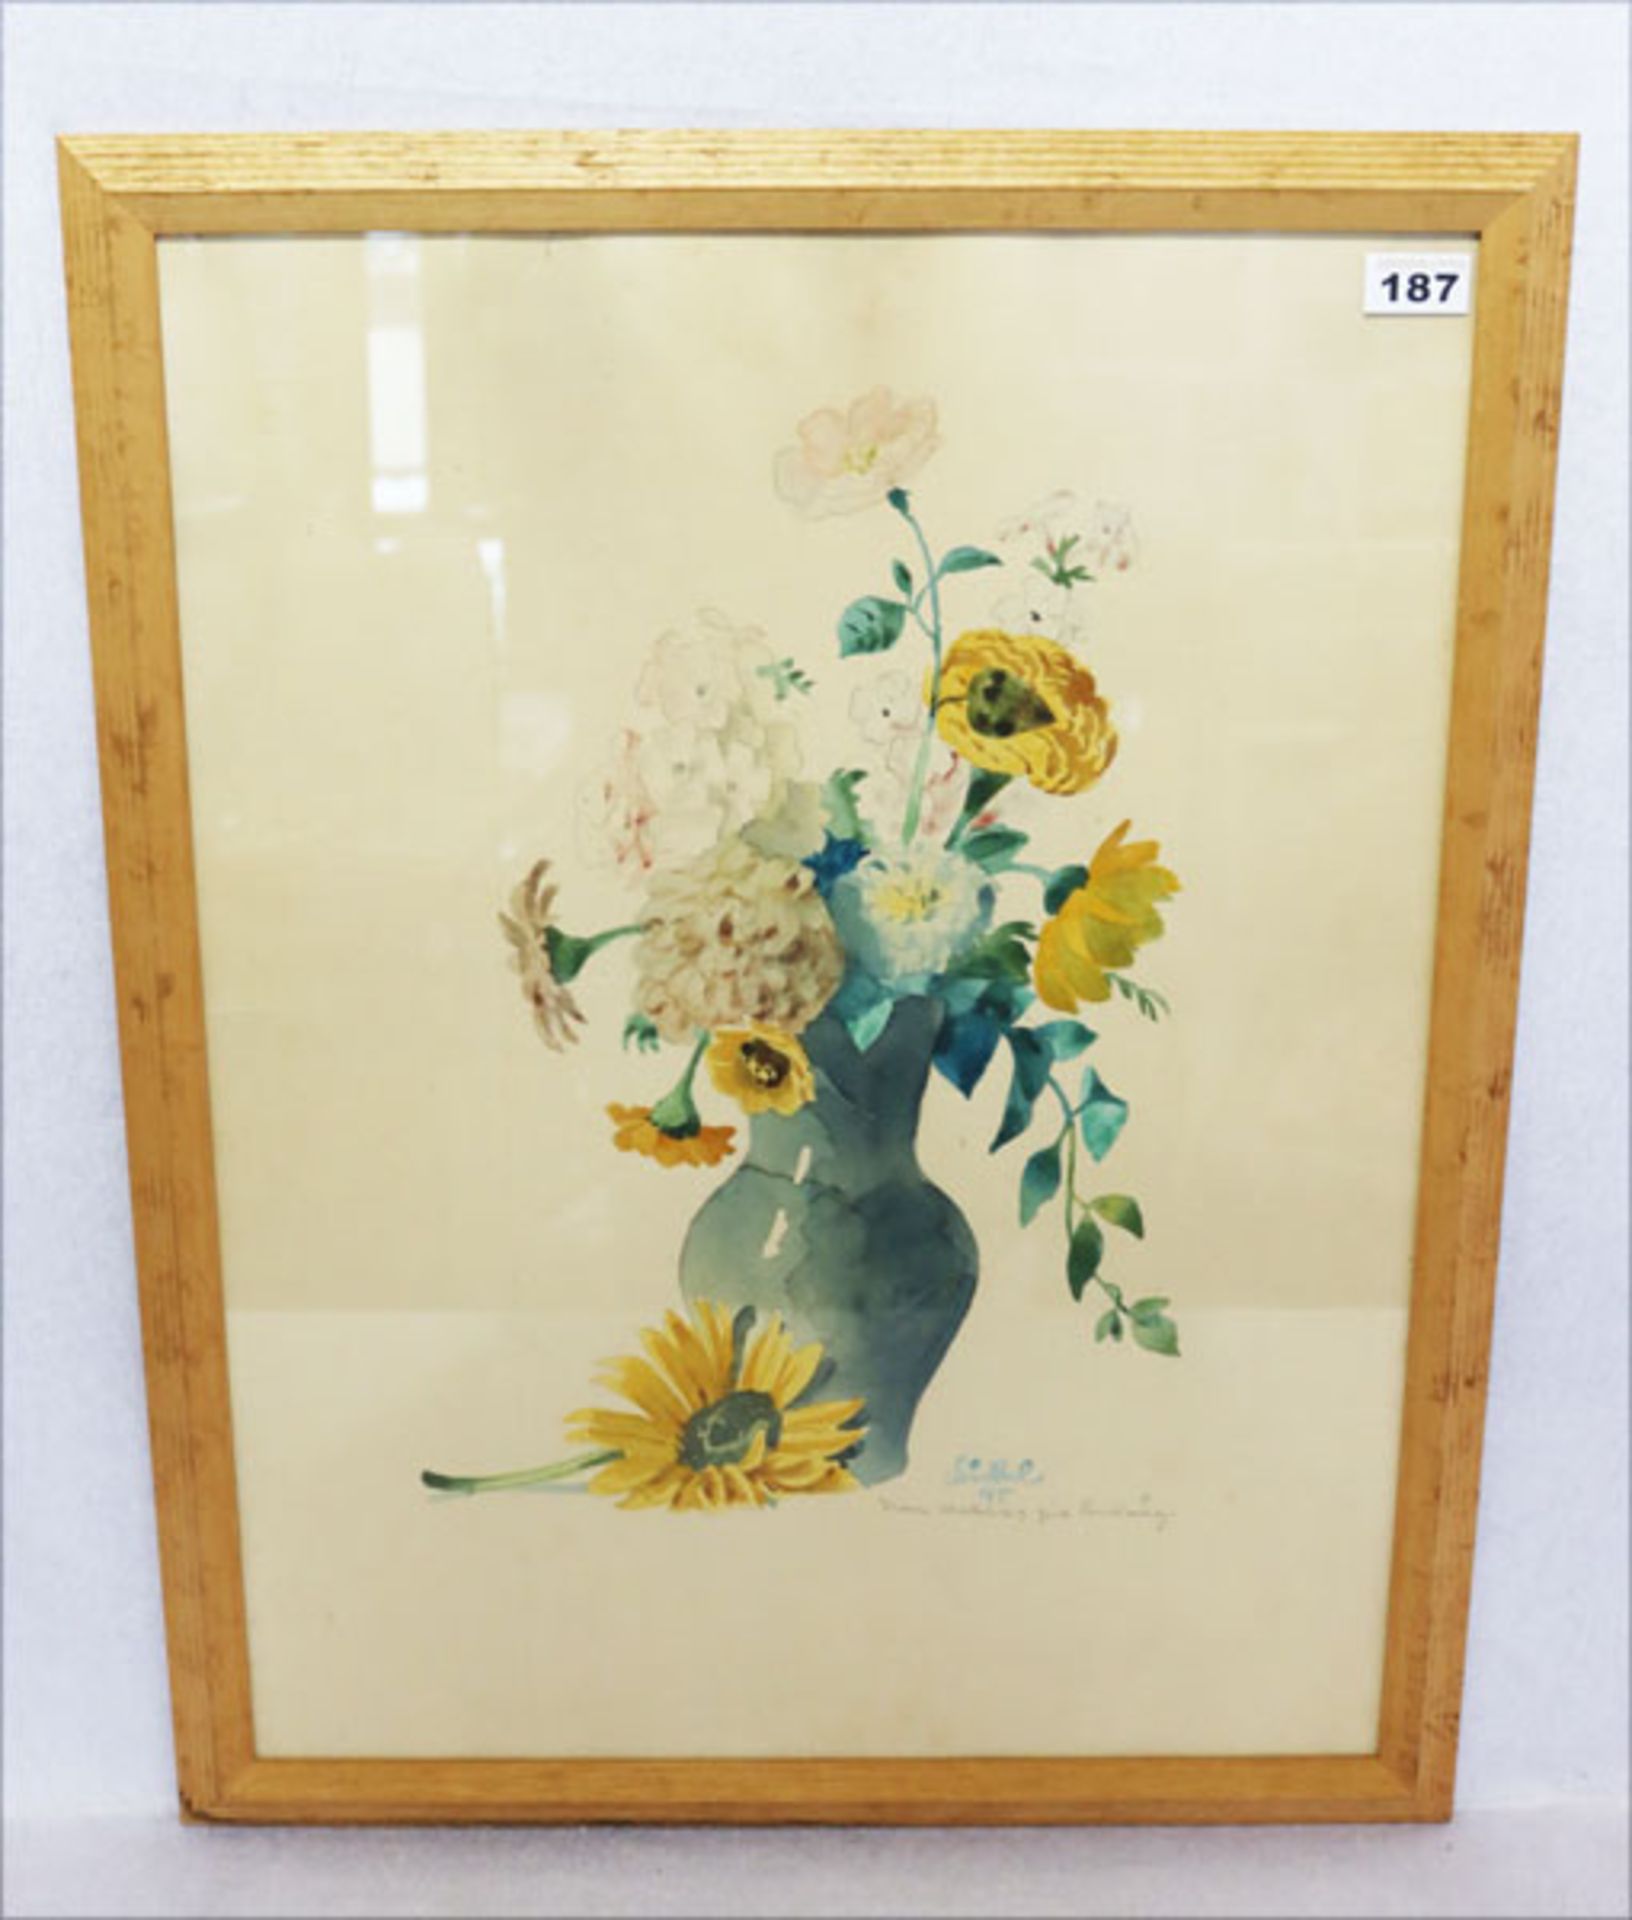 Aquarell 'Blumen in Vase', signiert Bickel 45, mit Widmung, Heinrich Bickel, Freskomaler, * 27.1.